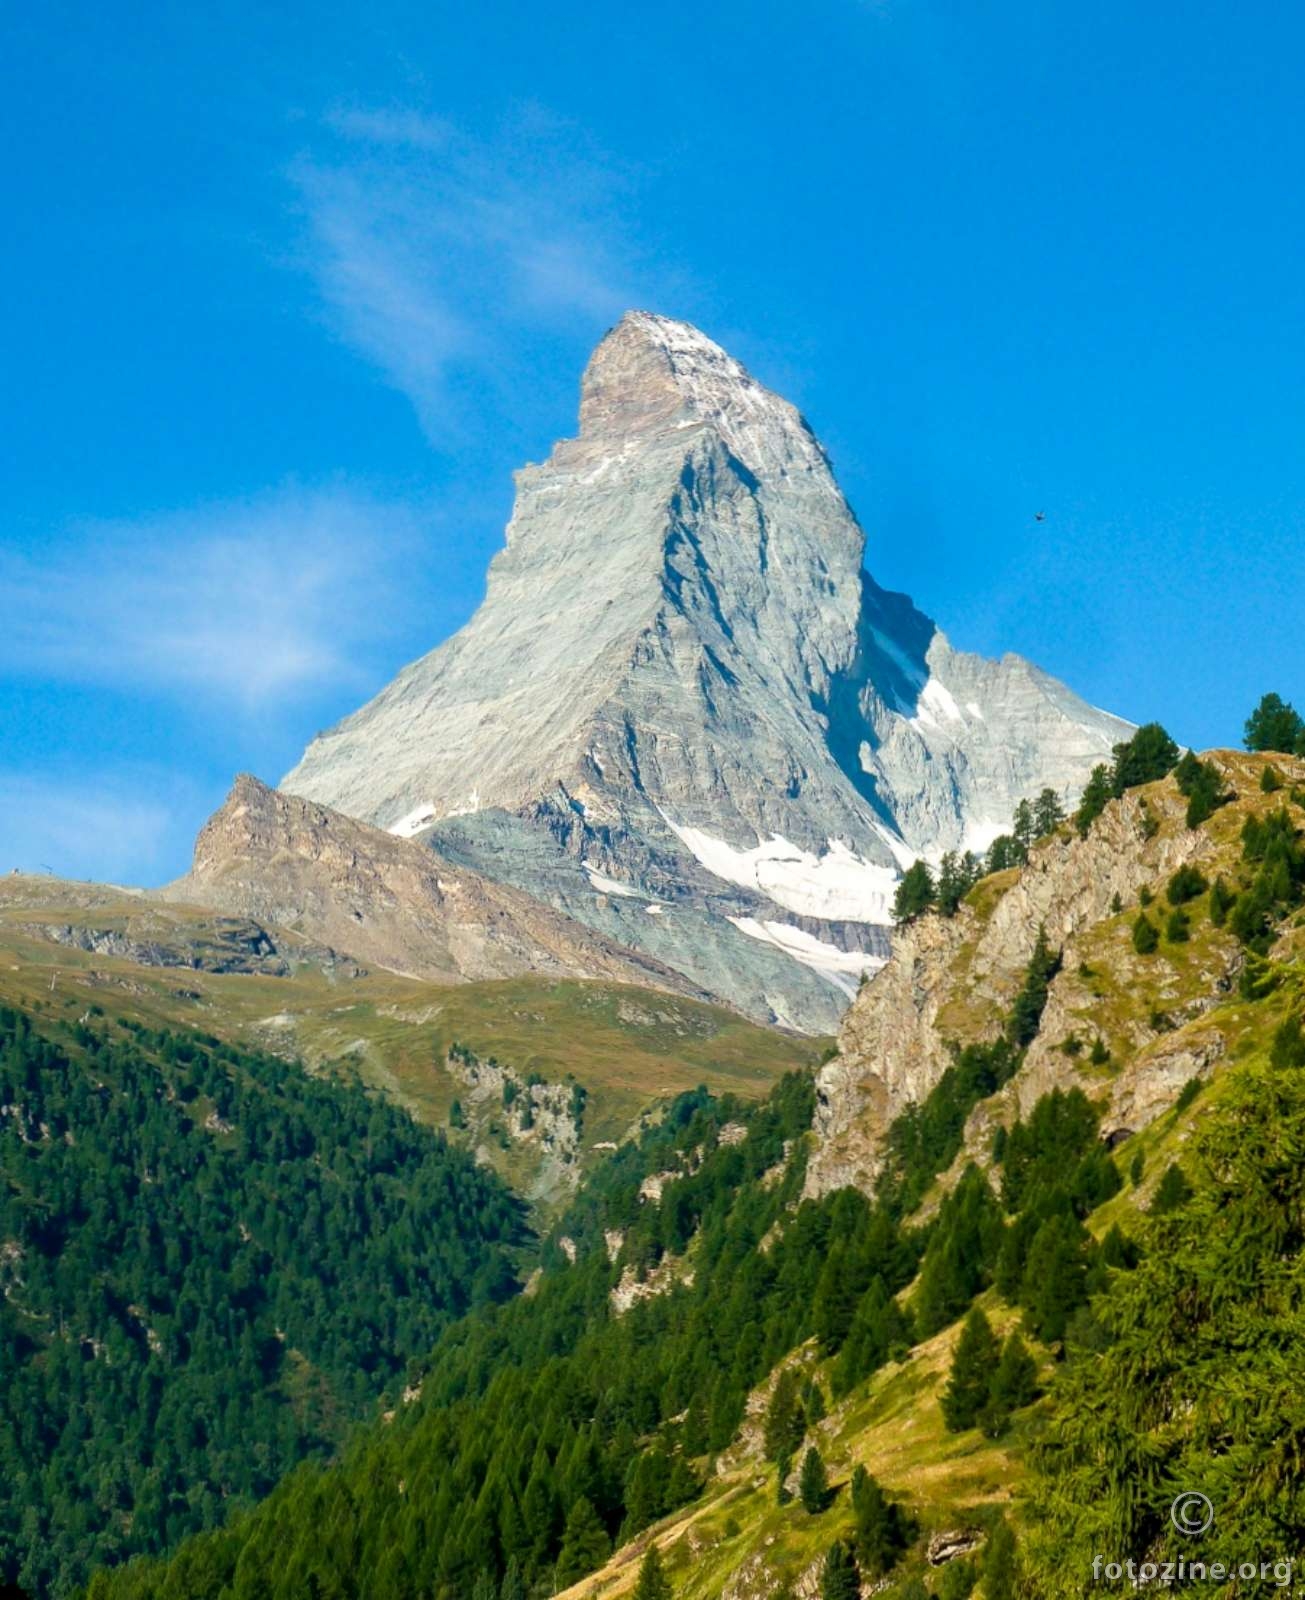 Matterhorn - 4478m